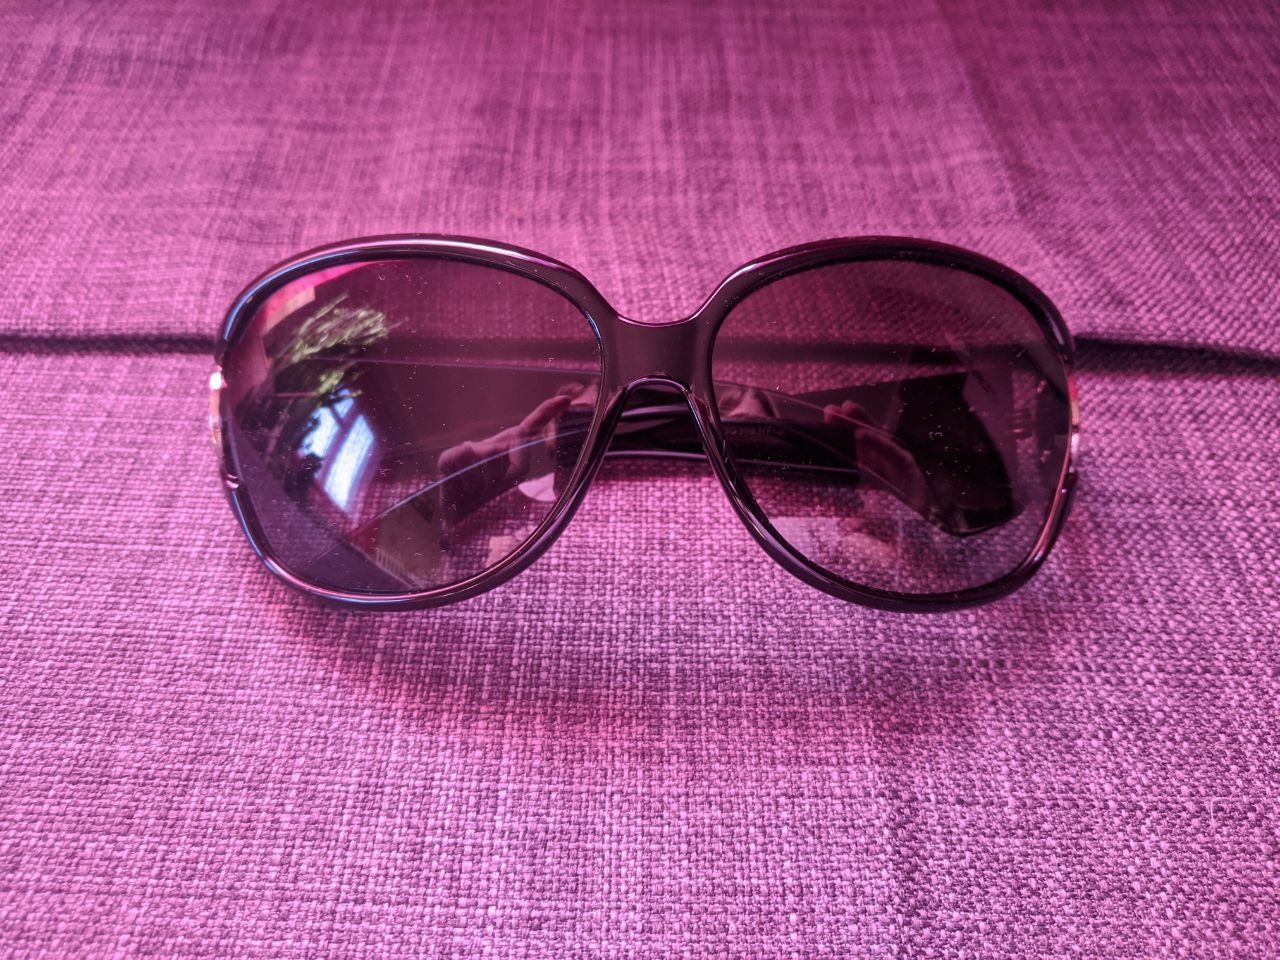 Сонячні окуляри жіночі